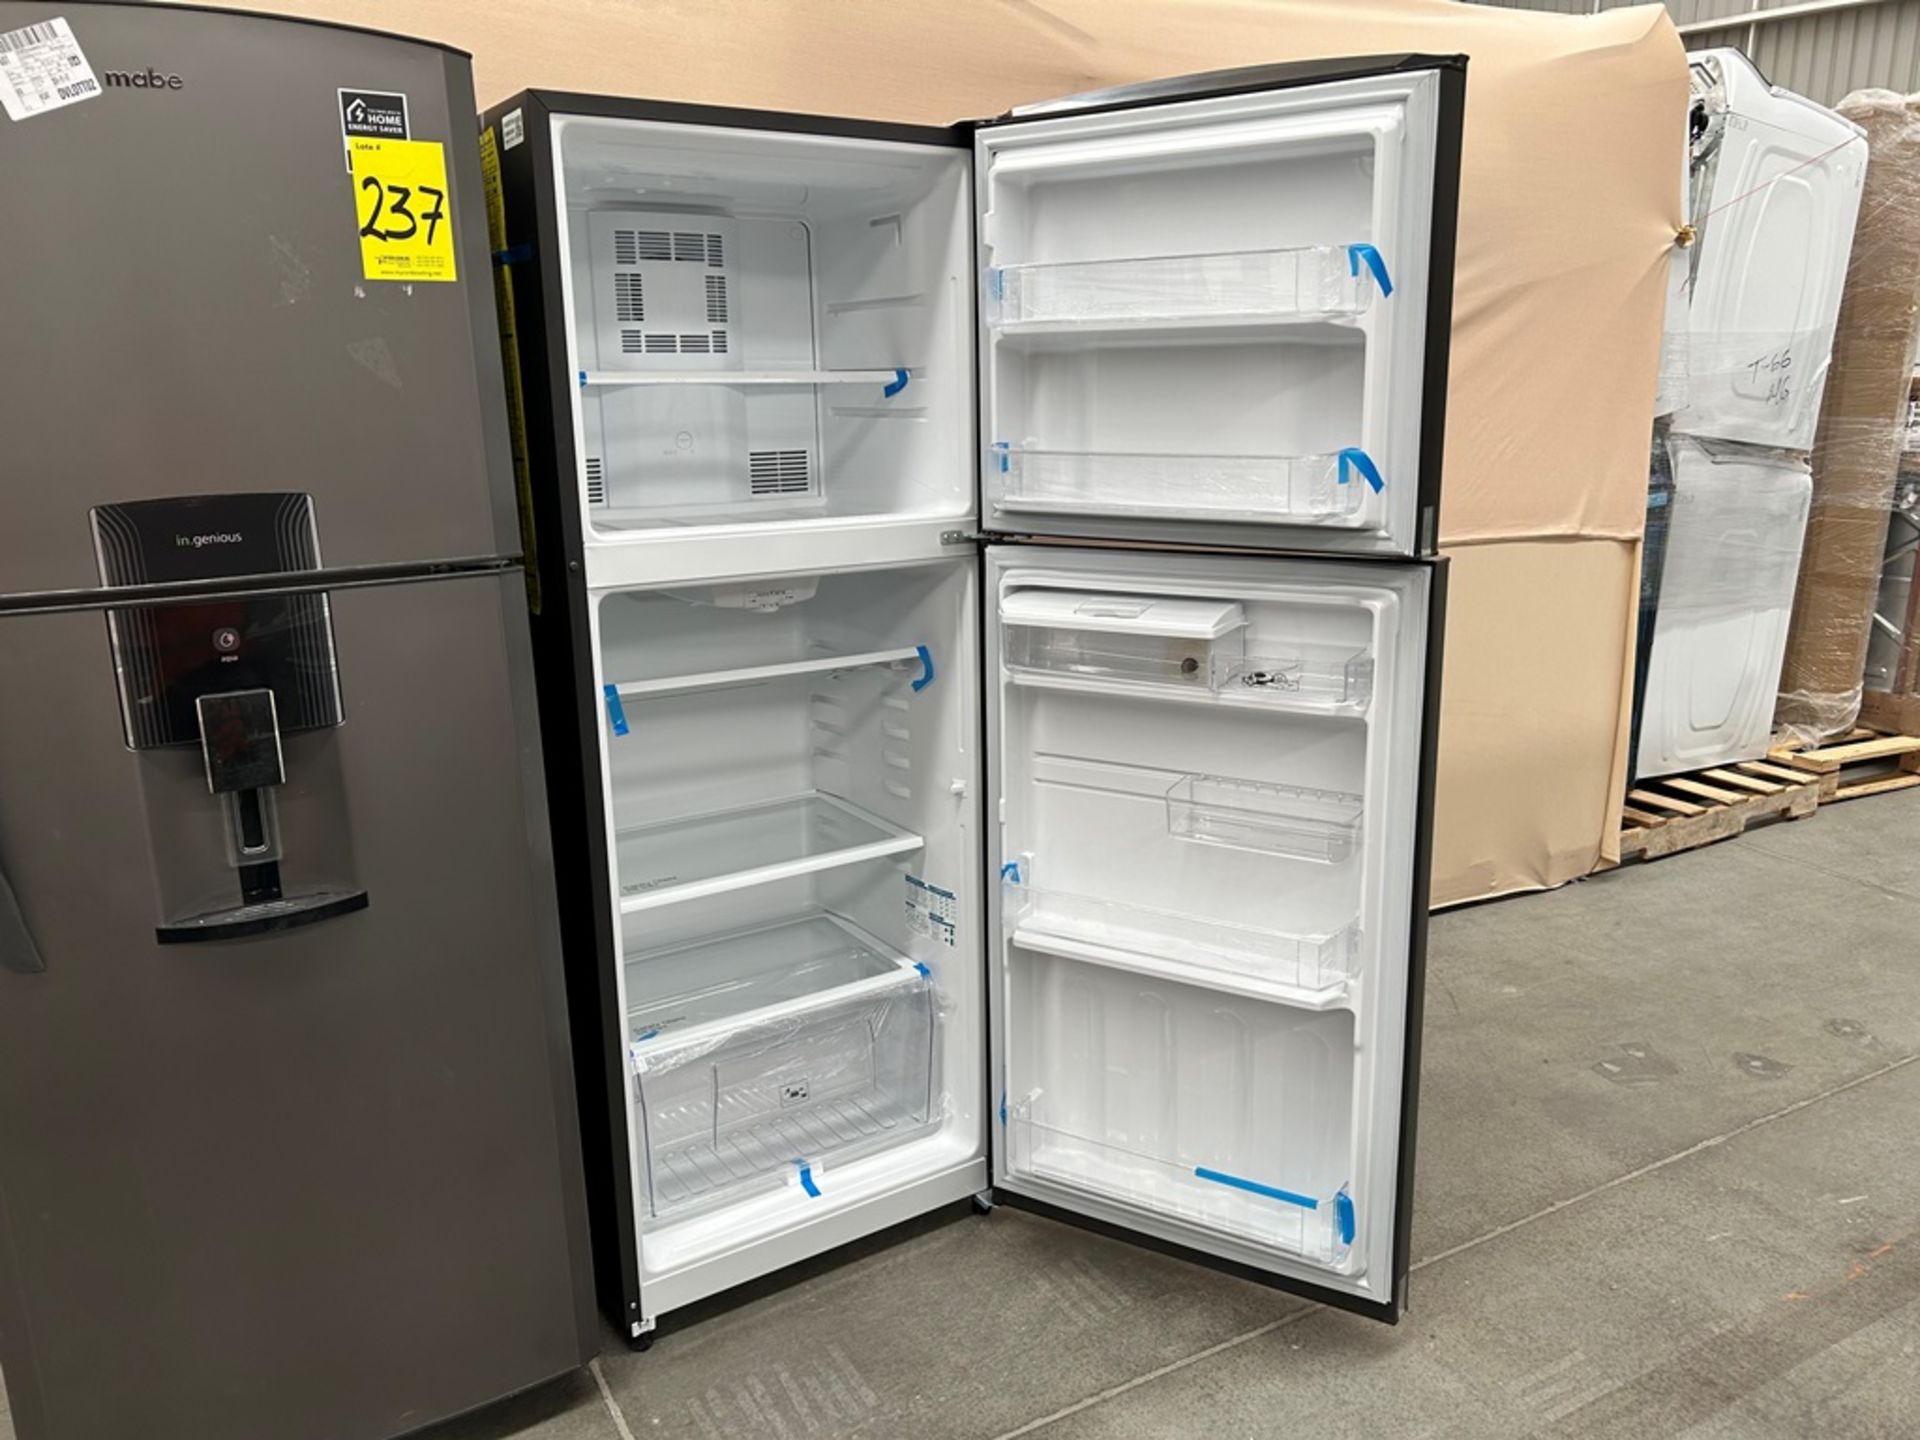 Lote de 2 refrigeradores contiene: Refrigerador con dispensador de agua Marca MABE, Modelo RME360FD - Image 5 of 6